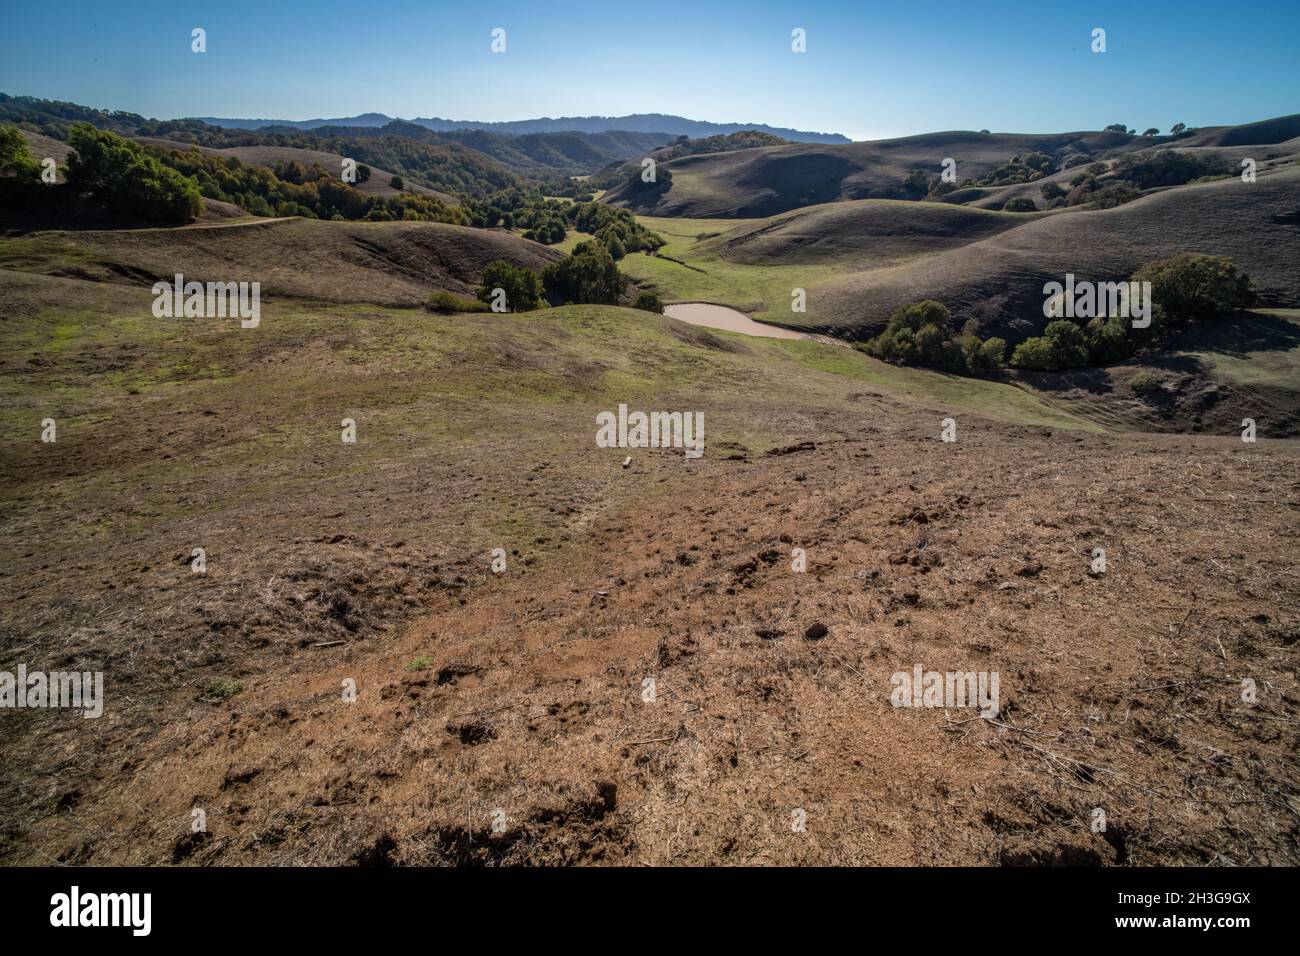 Die sanften grasbewachsenen Hügel Kaliforniens an der Westküste der USA in Nordamerika. Stockfoto